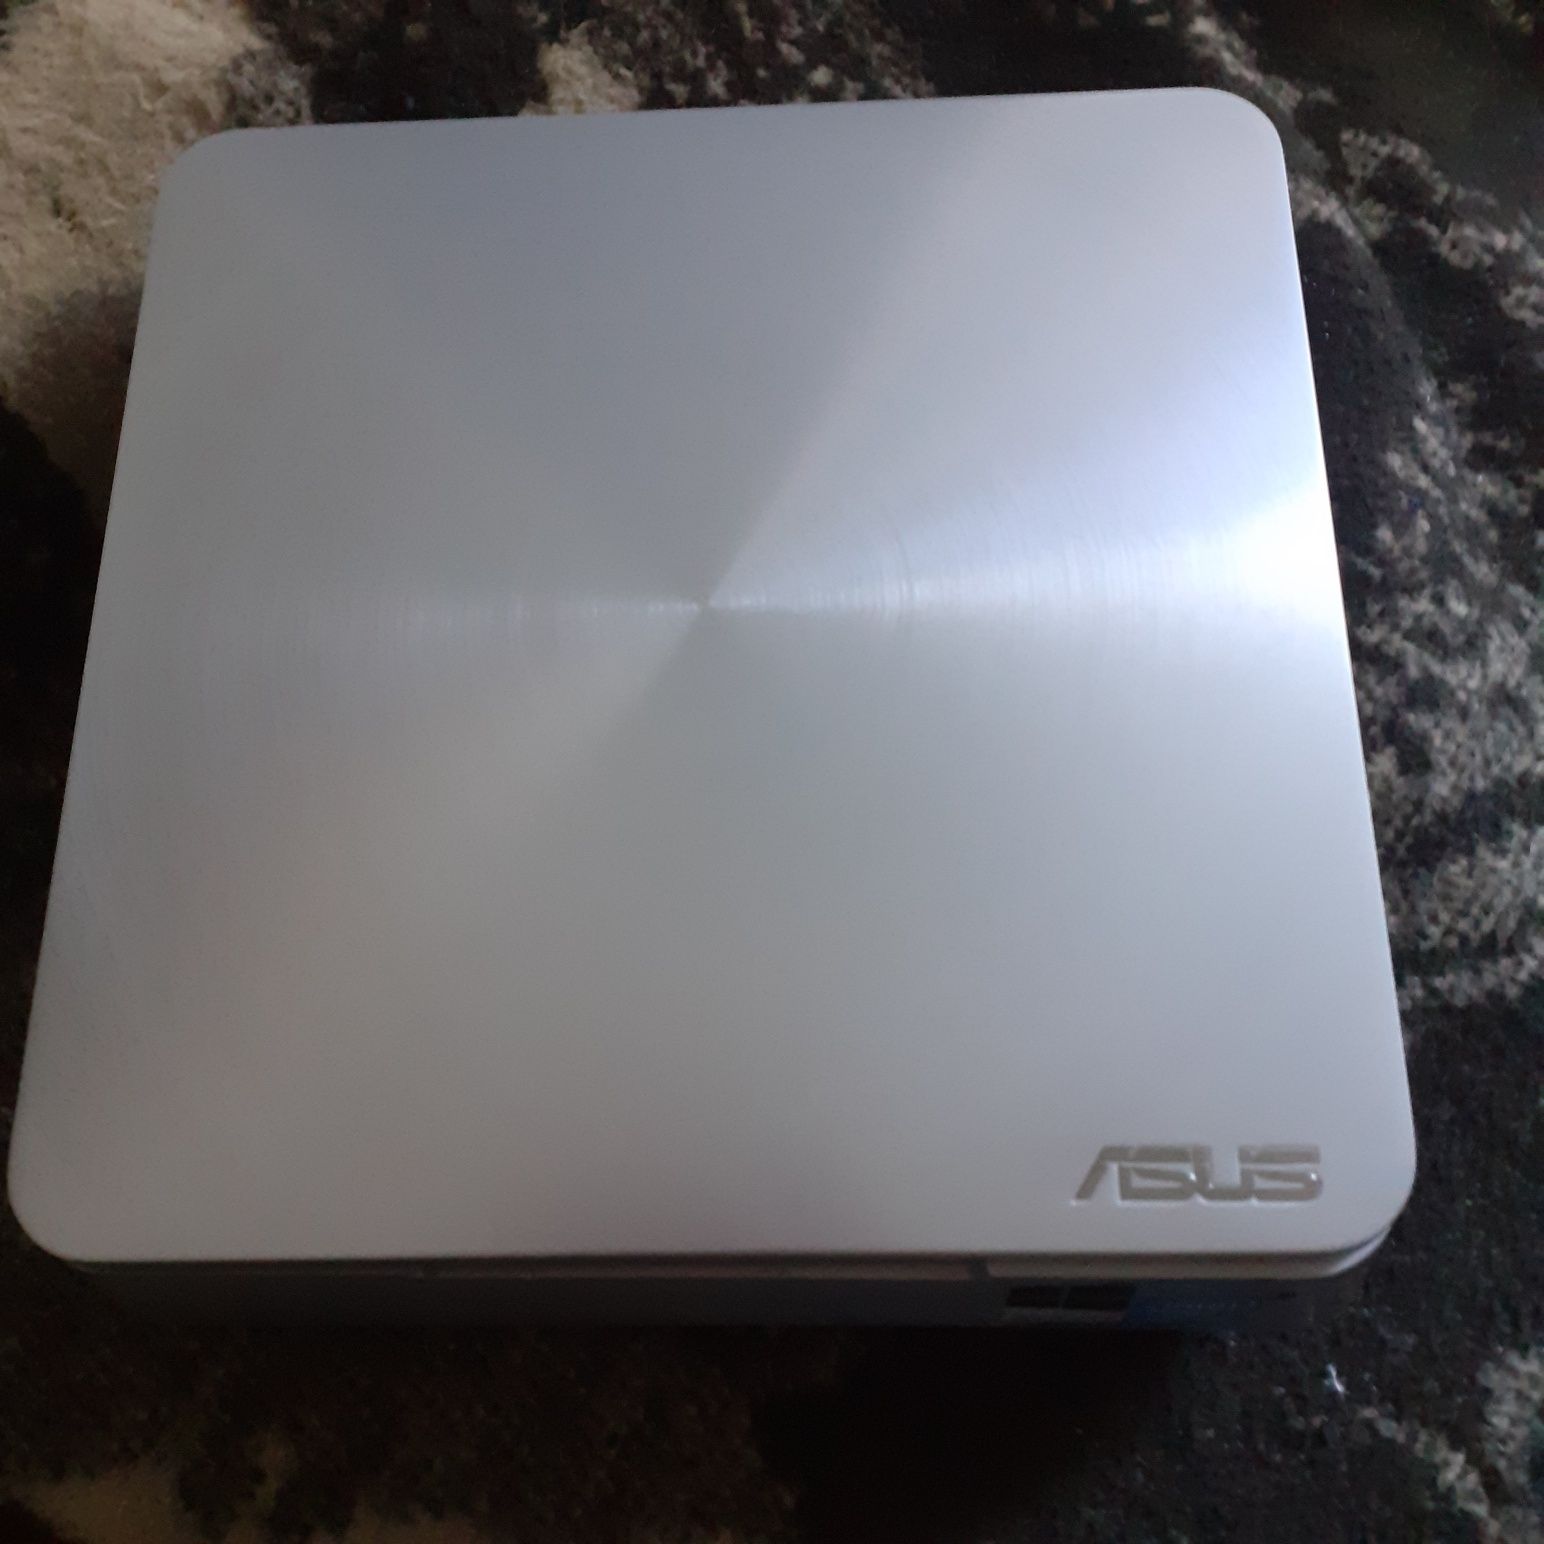 Asus vivo mini PC i3 8gb ram 500gb hdd